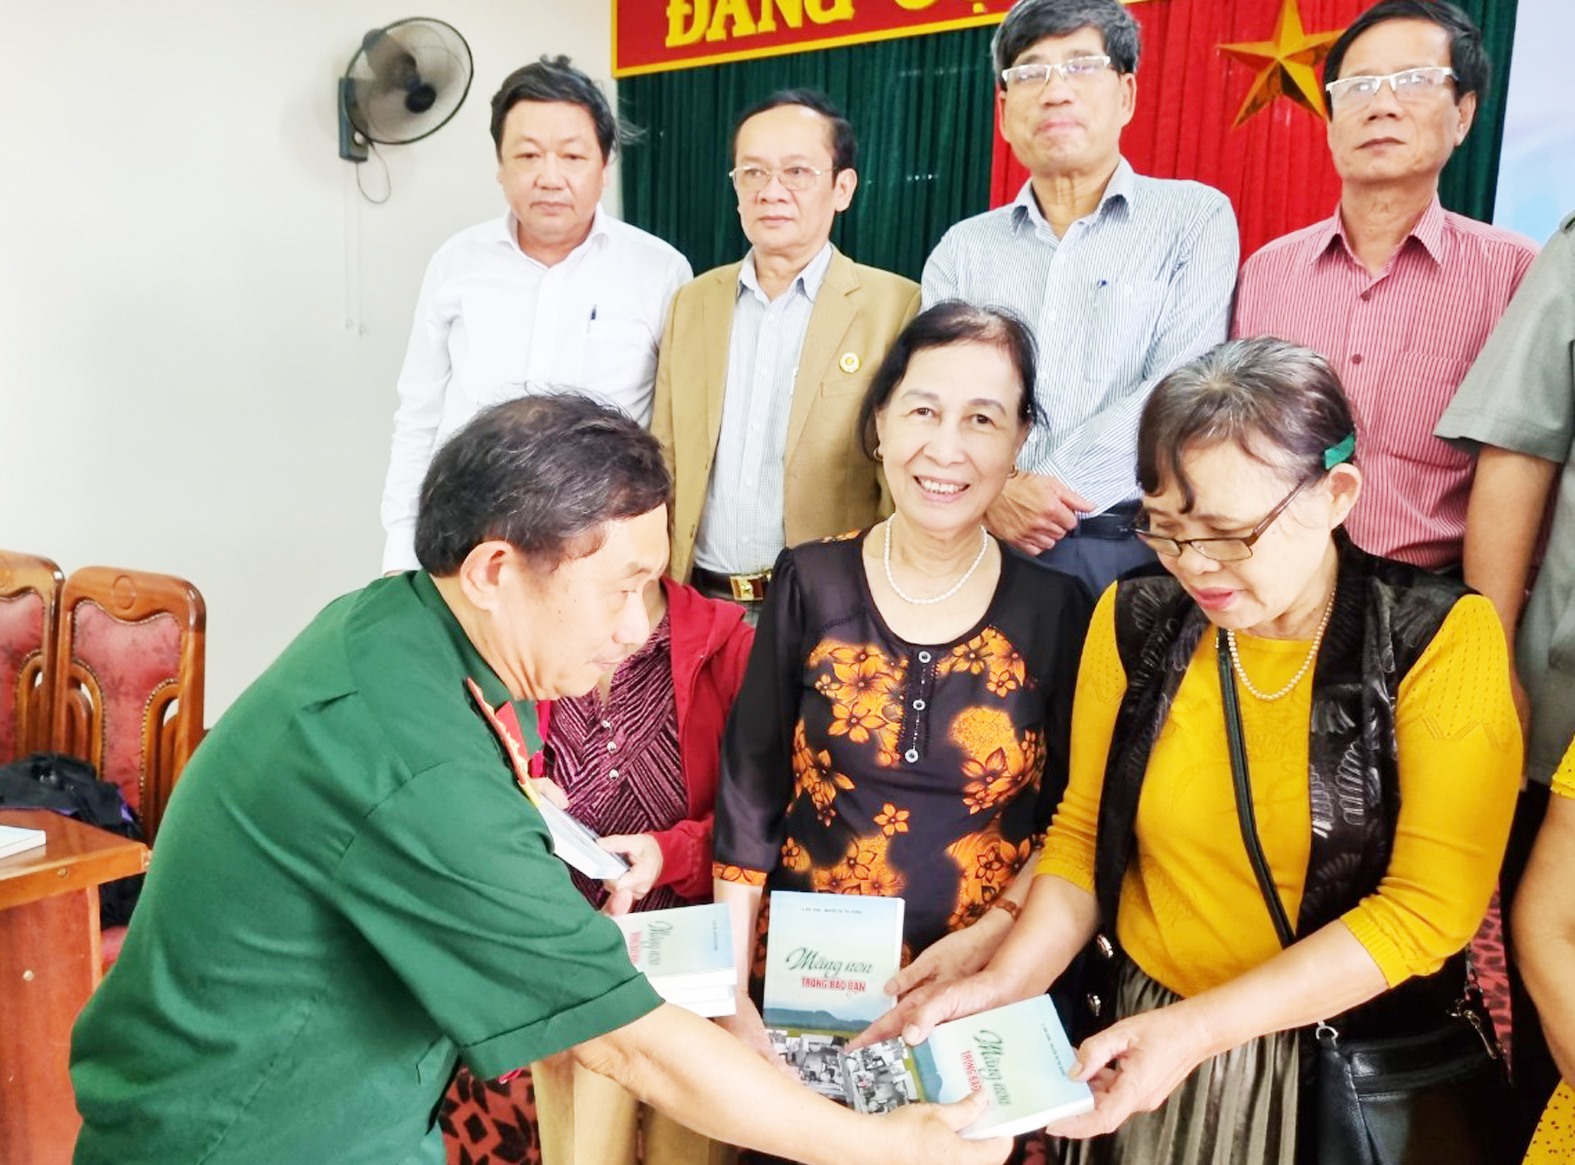 Tác giả Lê Anh Dũng tặng sách cho các đại biểu tham gia buổi giới thiếu tập sách “Măng non trong bão đạn” - Ảnh: Tú Linh